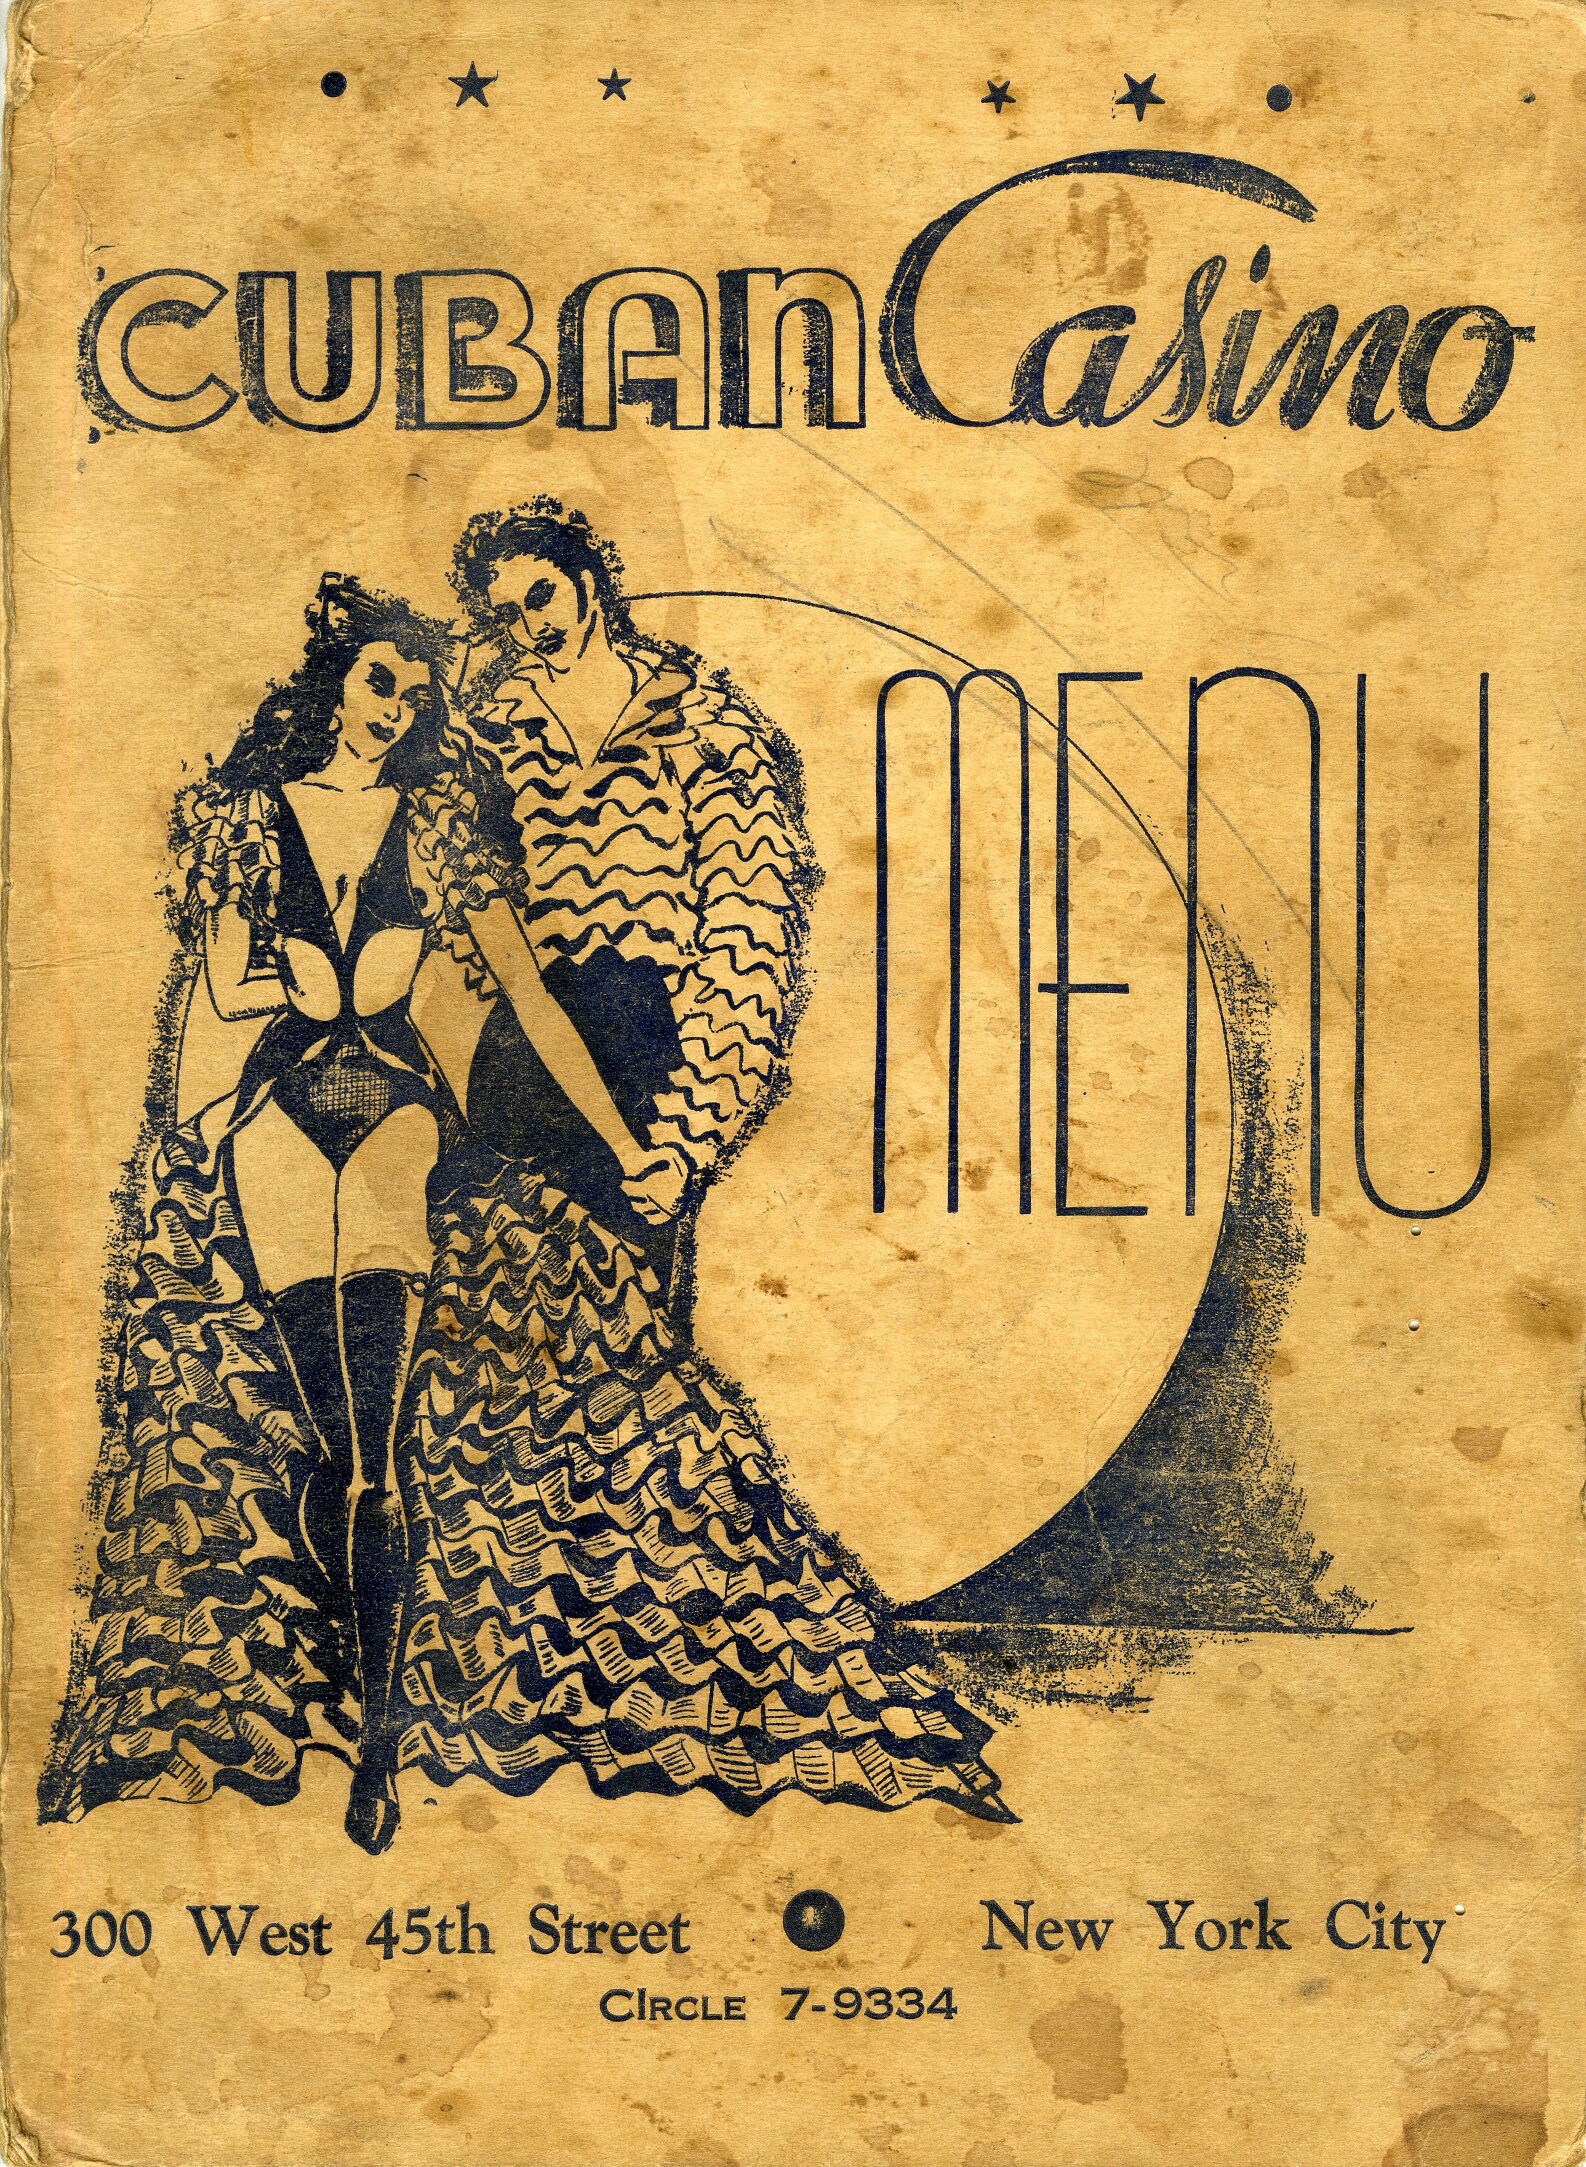 Cuban Casino menu, ca. 1940s